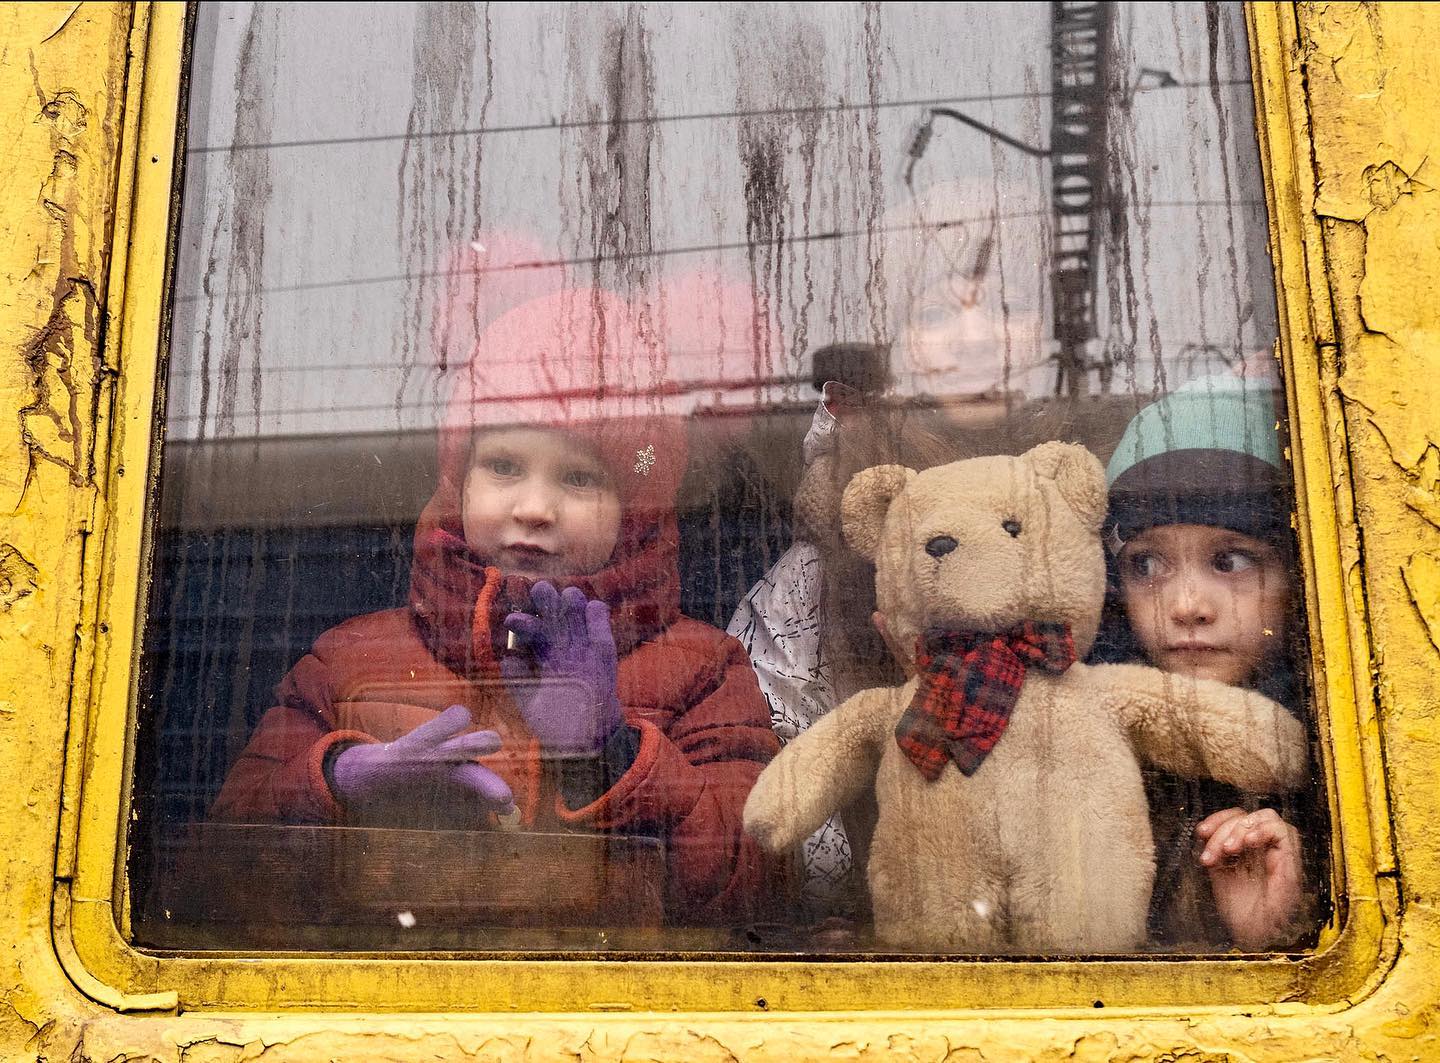  火车上的孩子，Lynsey Addario摄于基辅。 